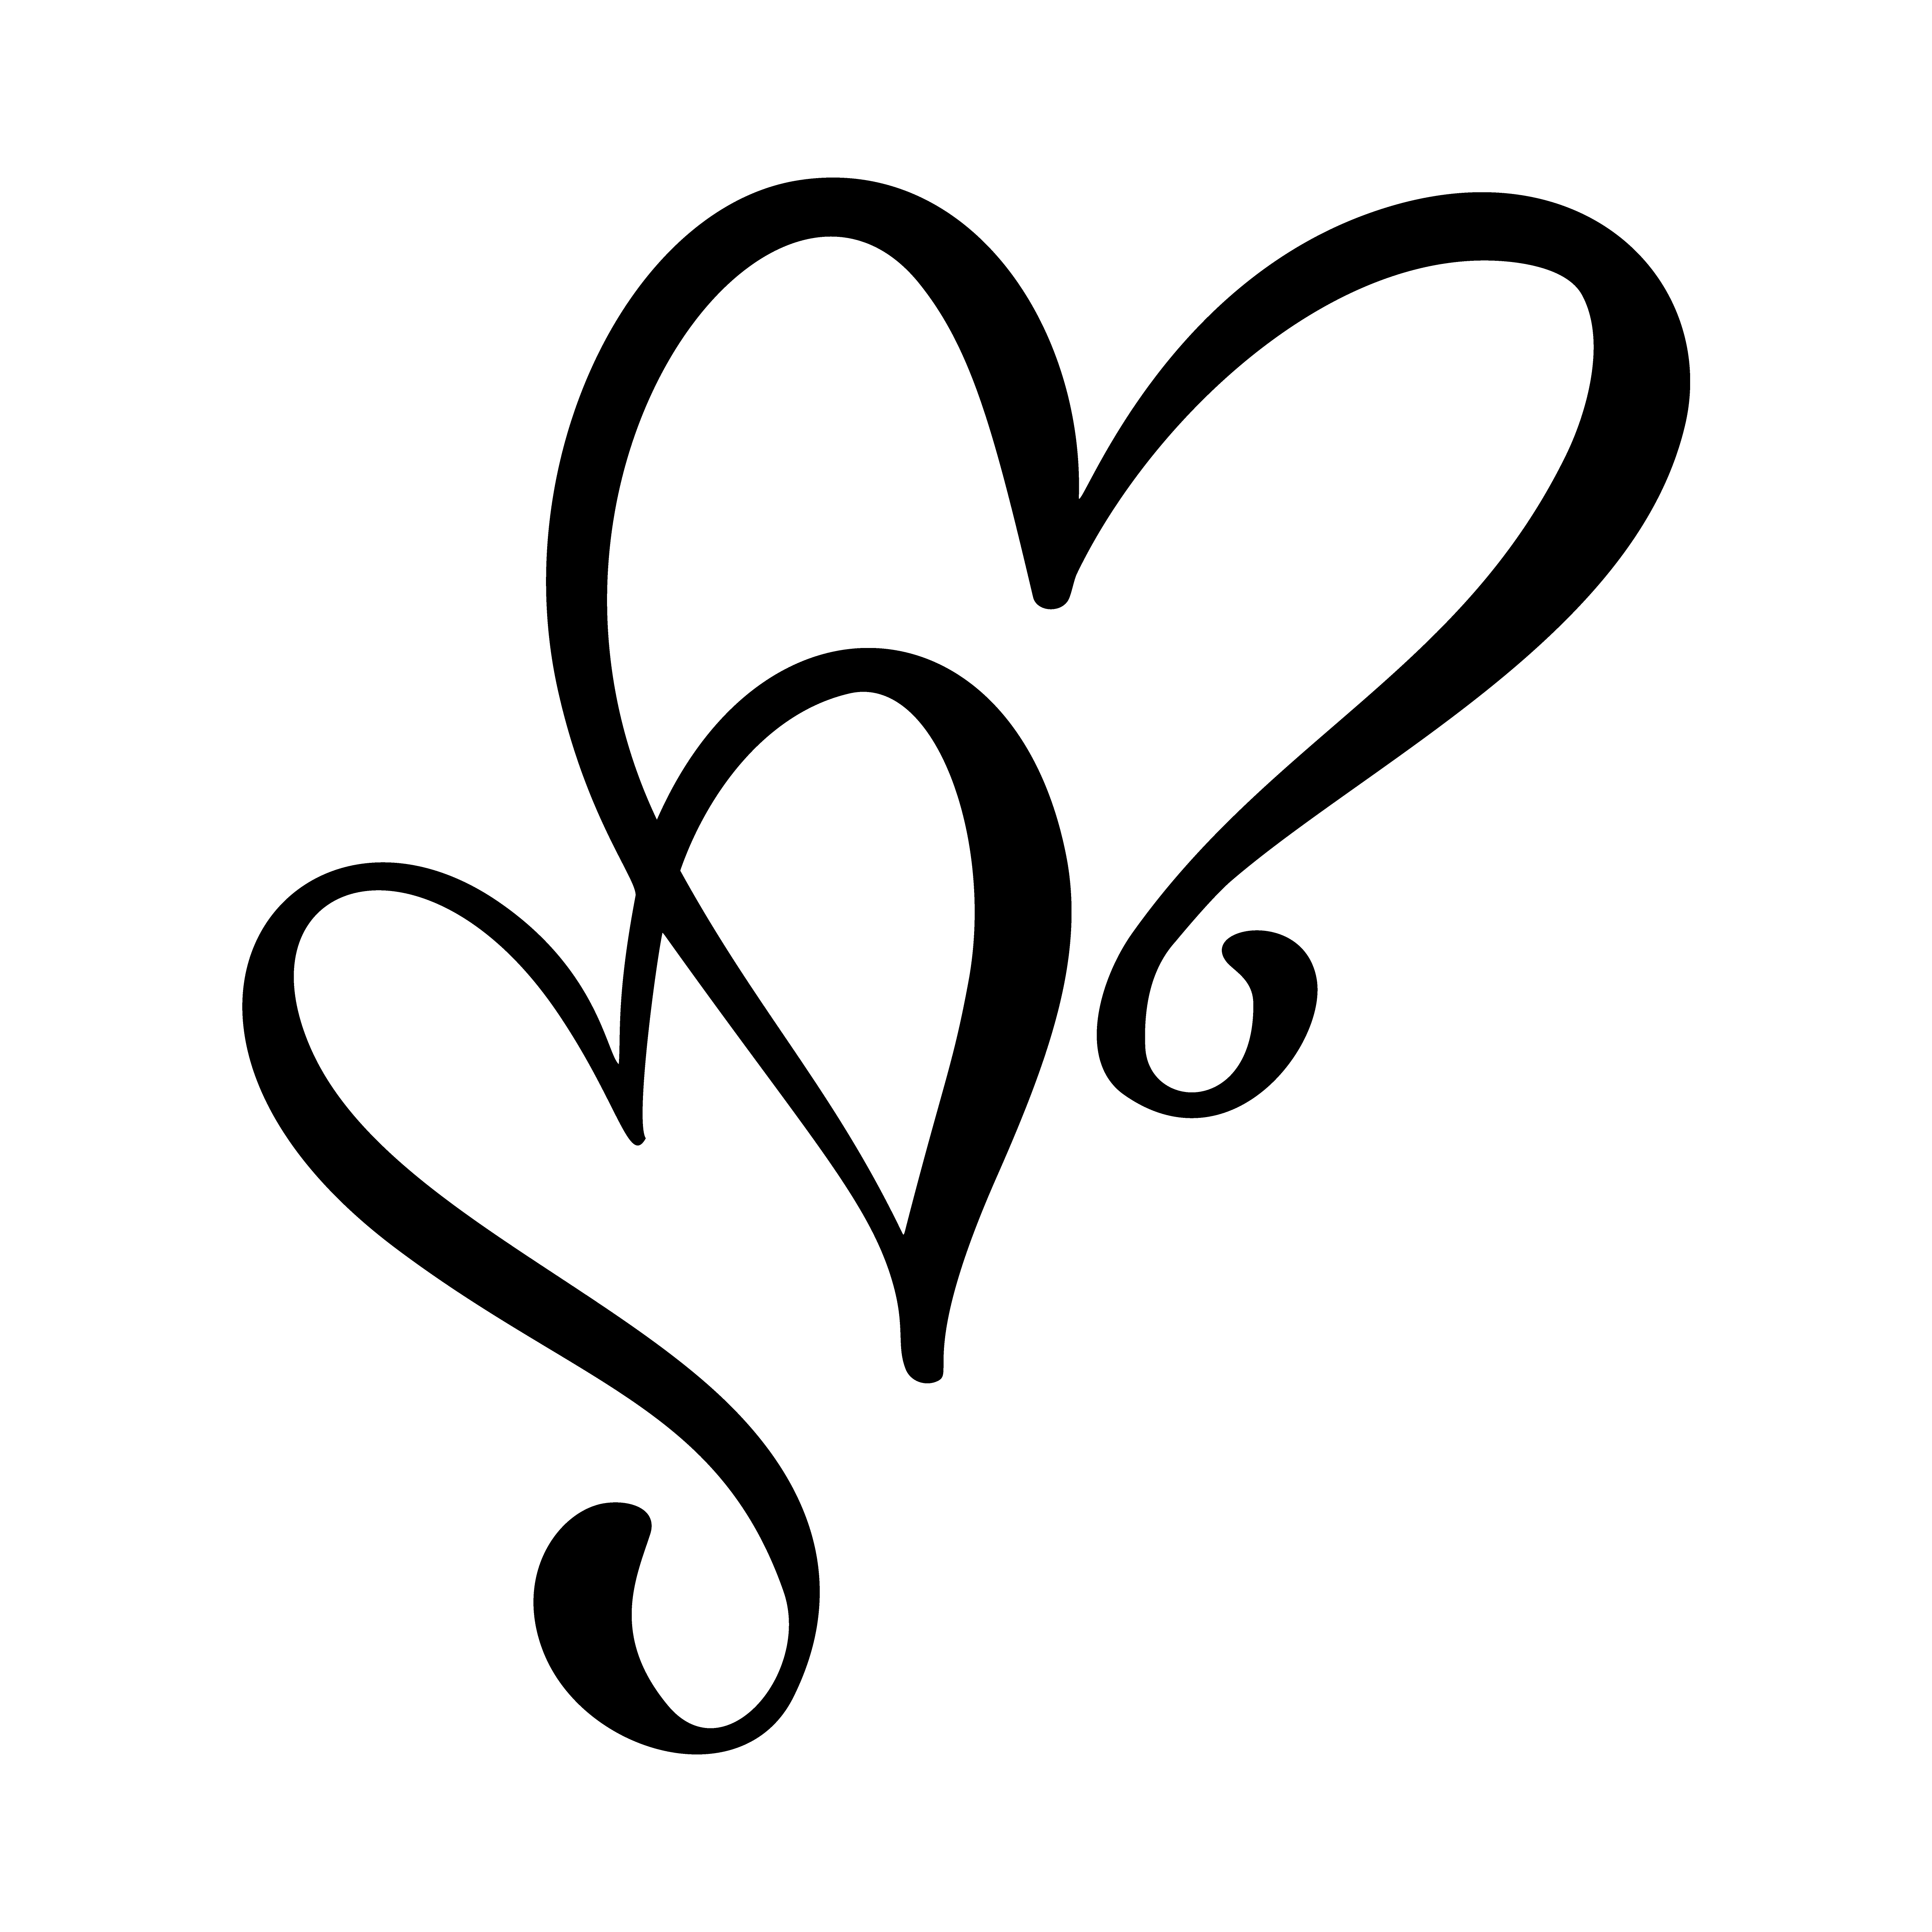 Dessin De Coeurs D 39 Amour Calligraphiques Telecharger Vectoriel Gratuit Clipart Graphique Vecteur Dessins Et Pictogramme Gratuit